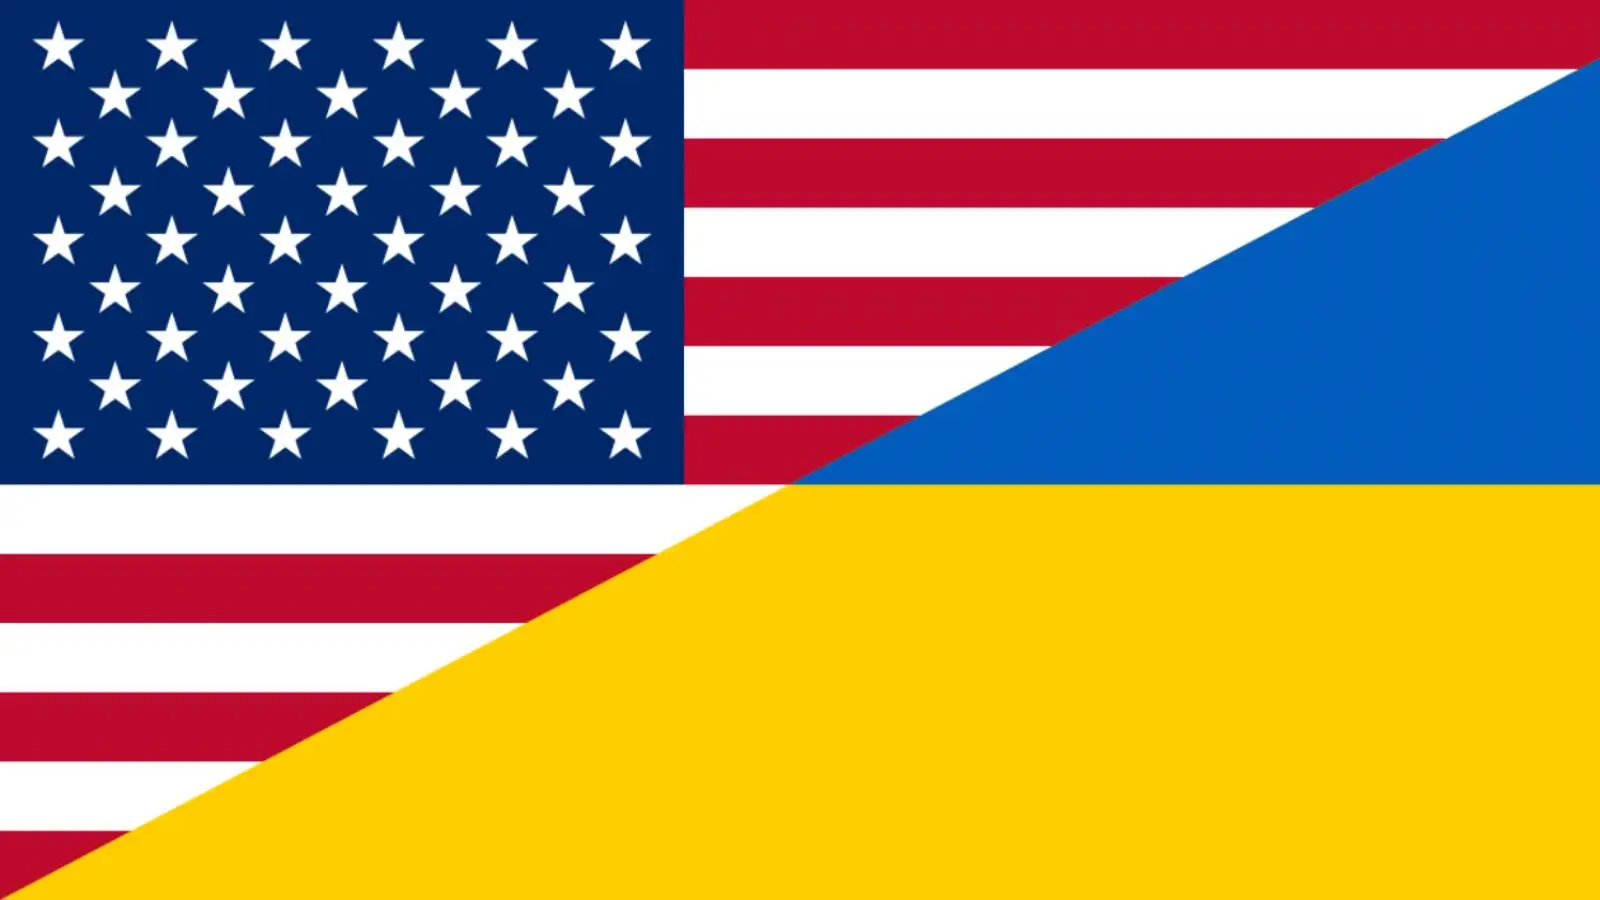 De VS waren verrast door het besluit van Oekraïne om lidmaatschap van de NAVO aan te vragen